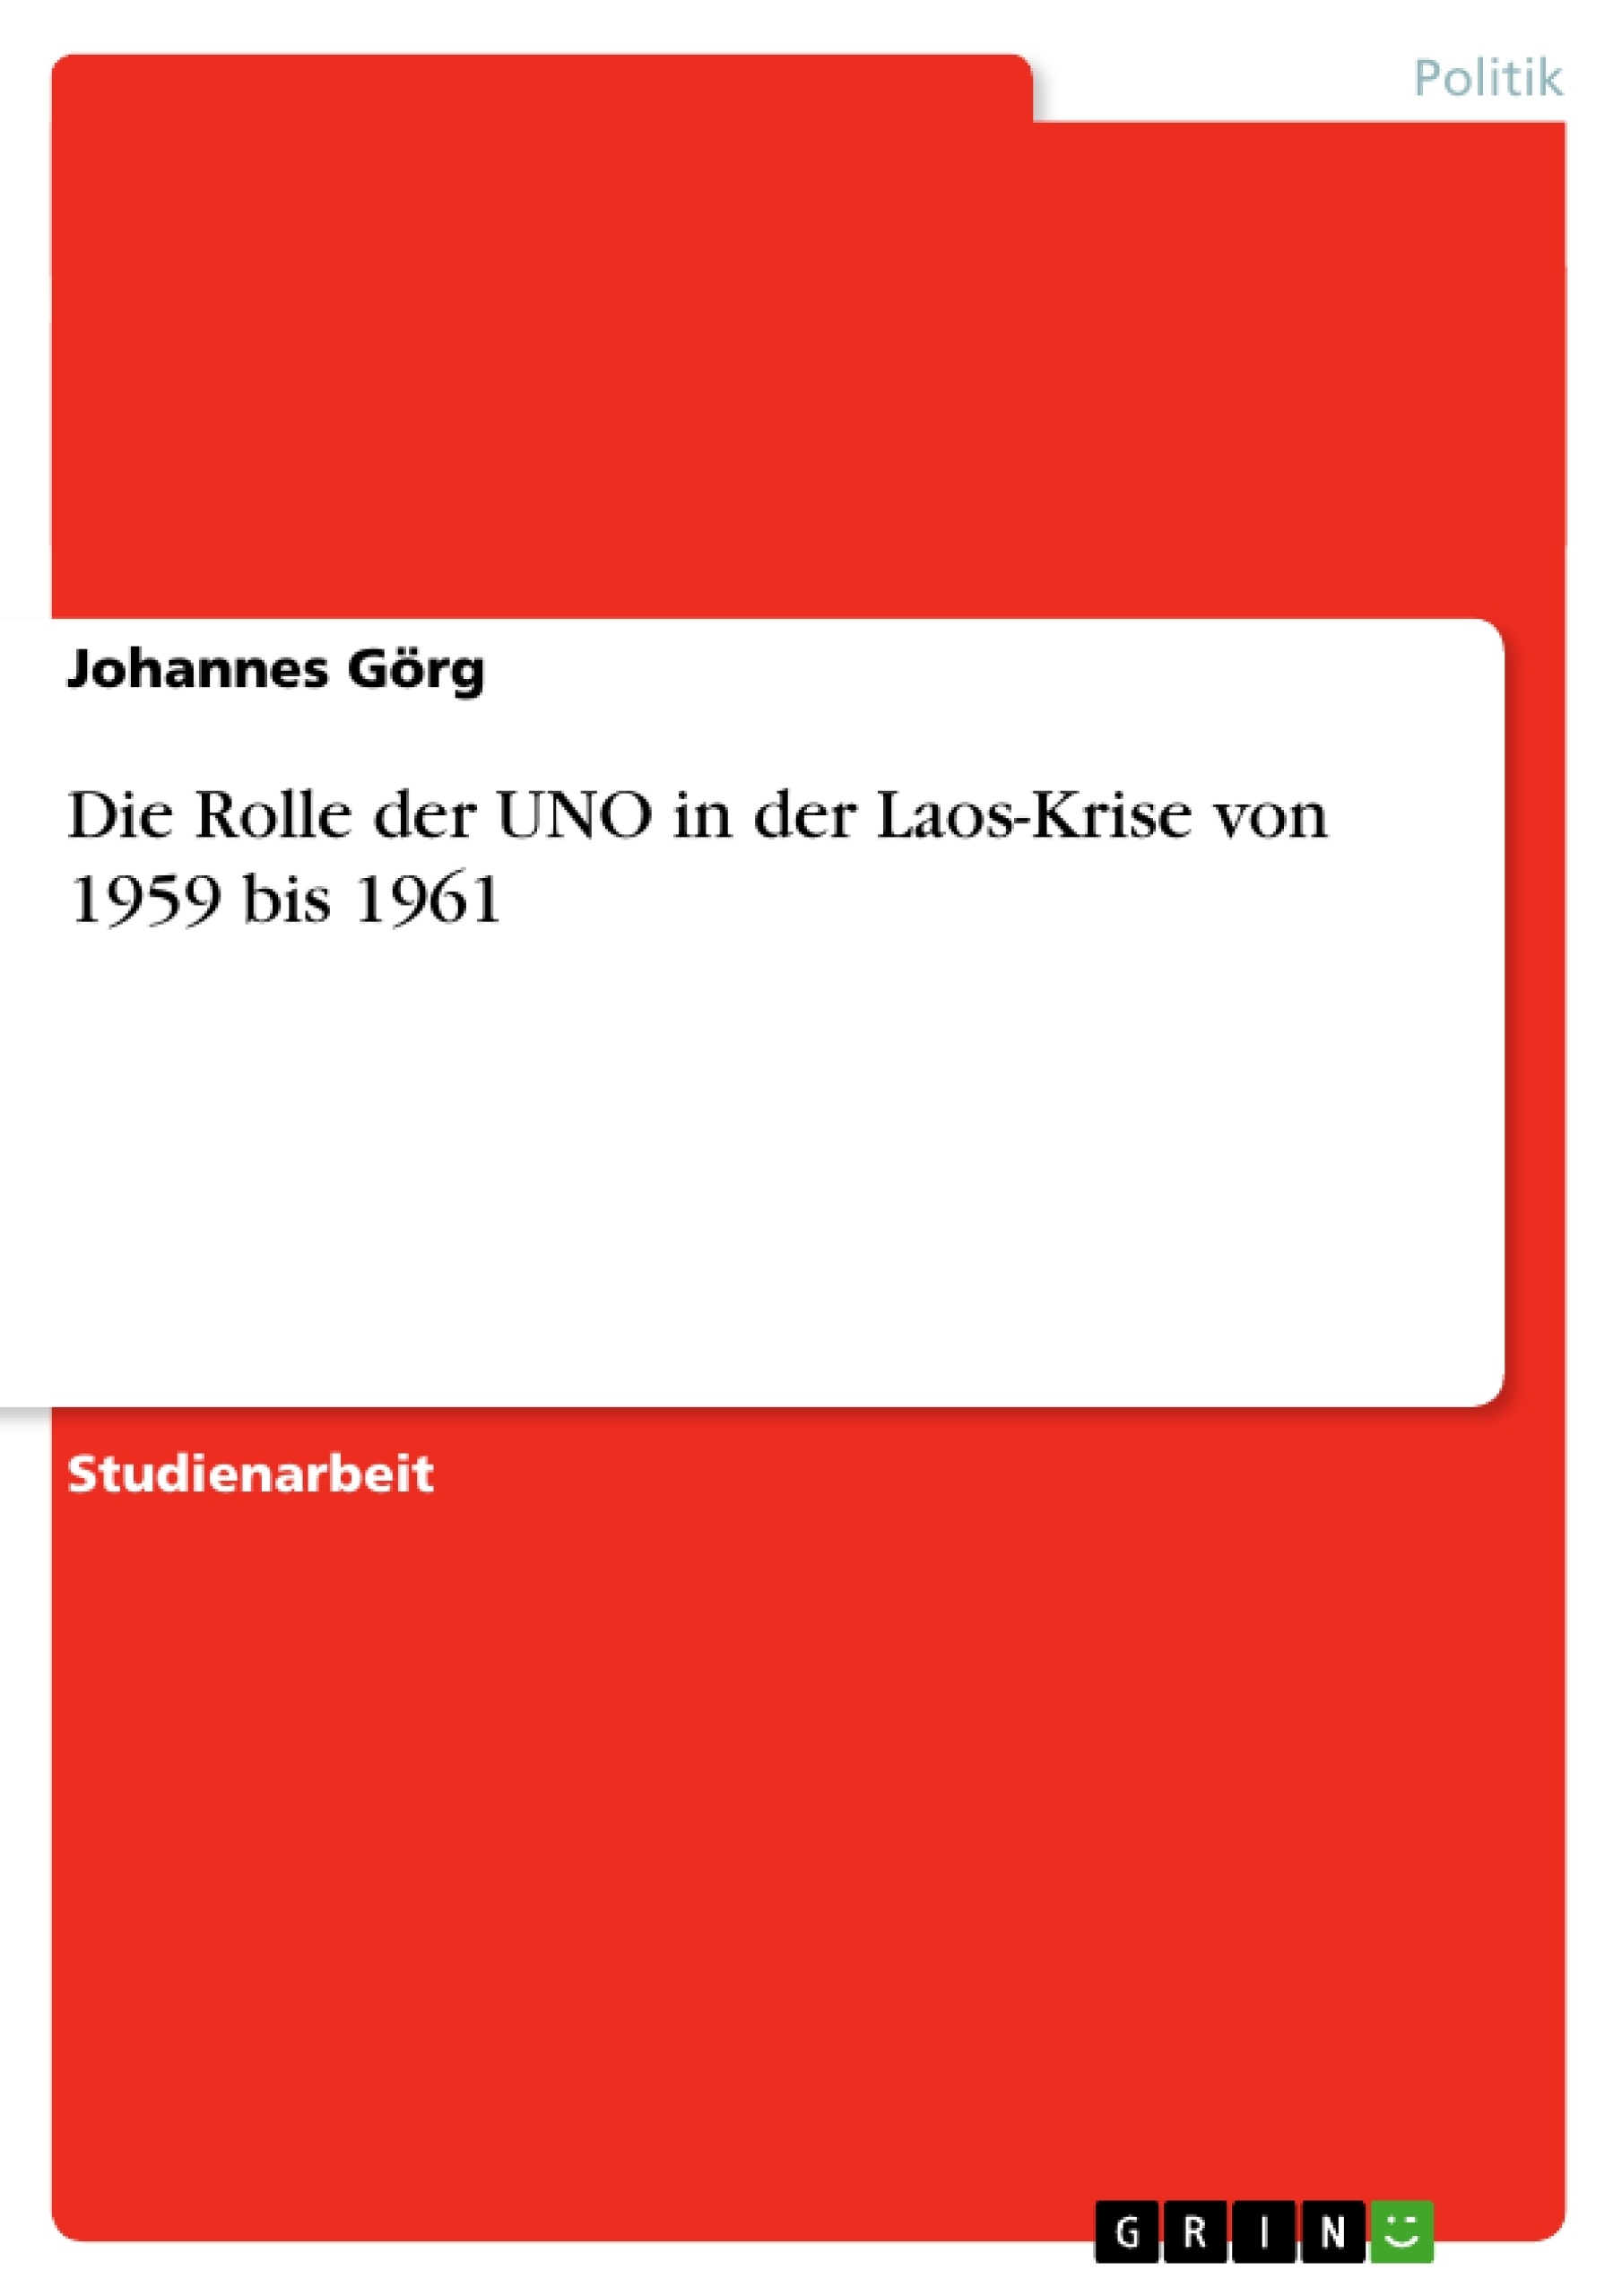 Título: Die Rolle der UNO in der Laos-Krise von 1959 bis 1961